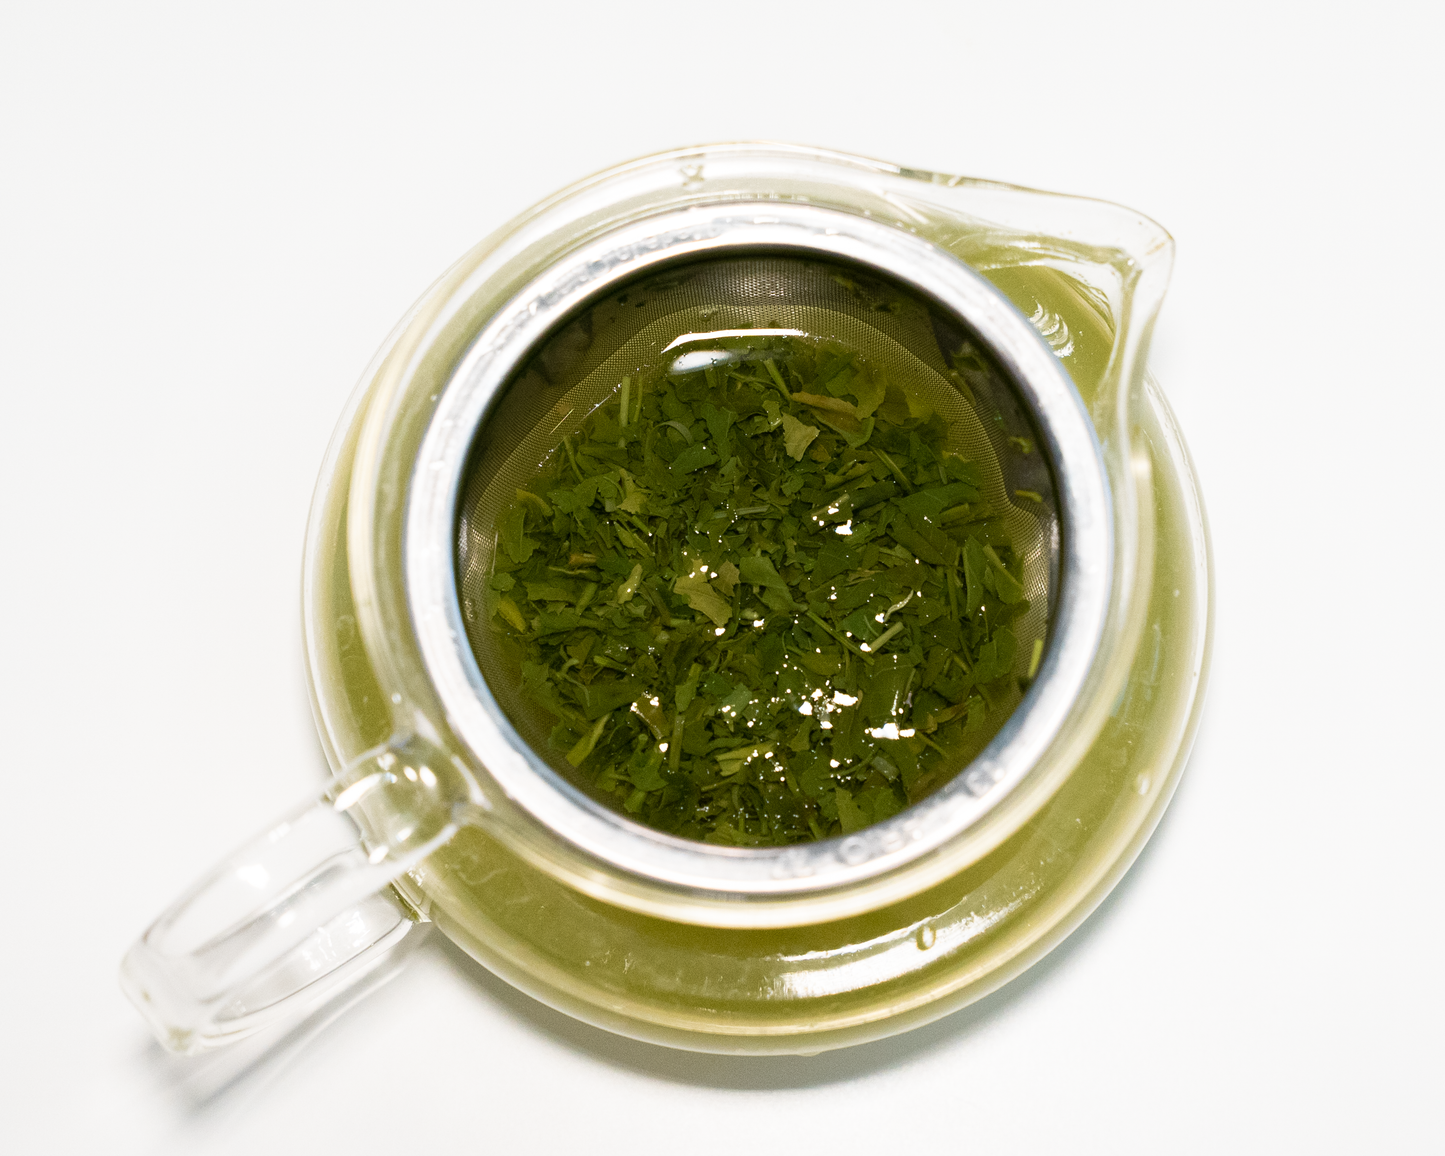 Maro - Aged Organic Premium Loose Leaf Tea